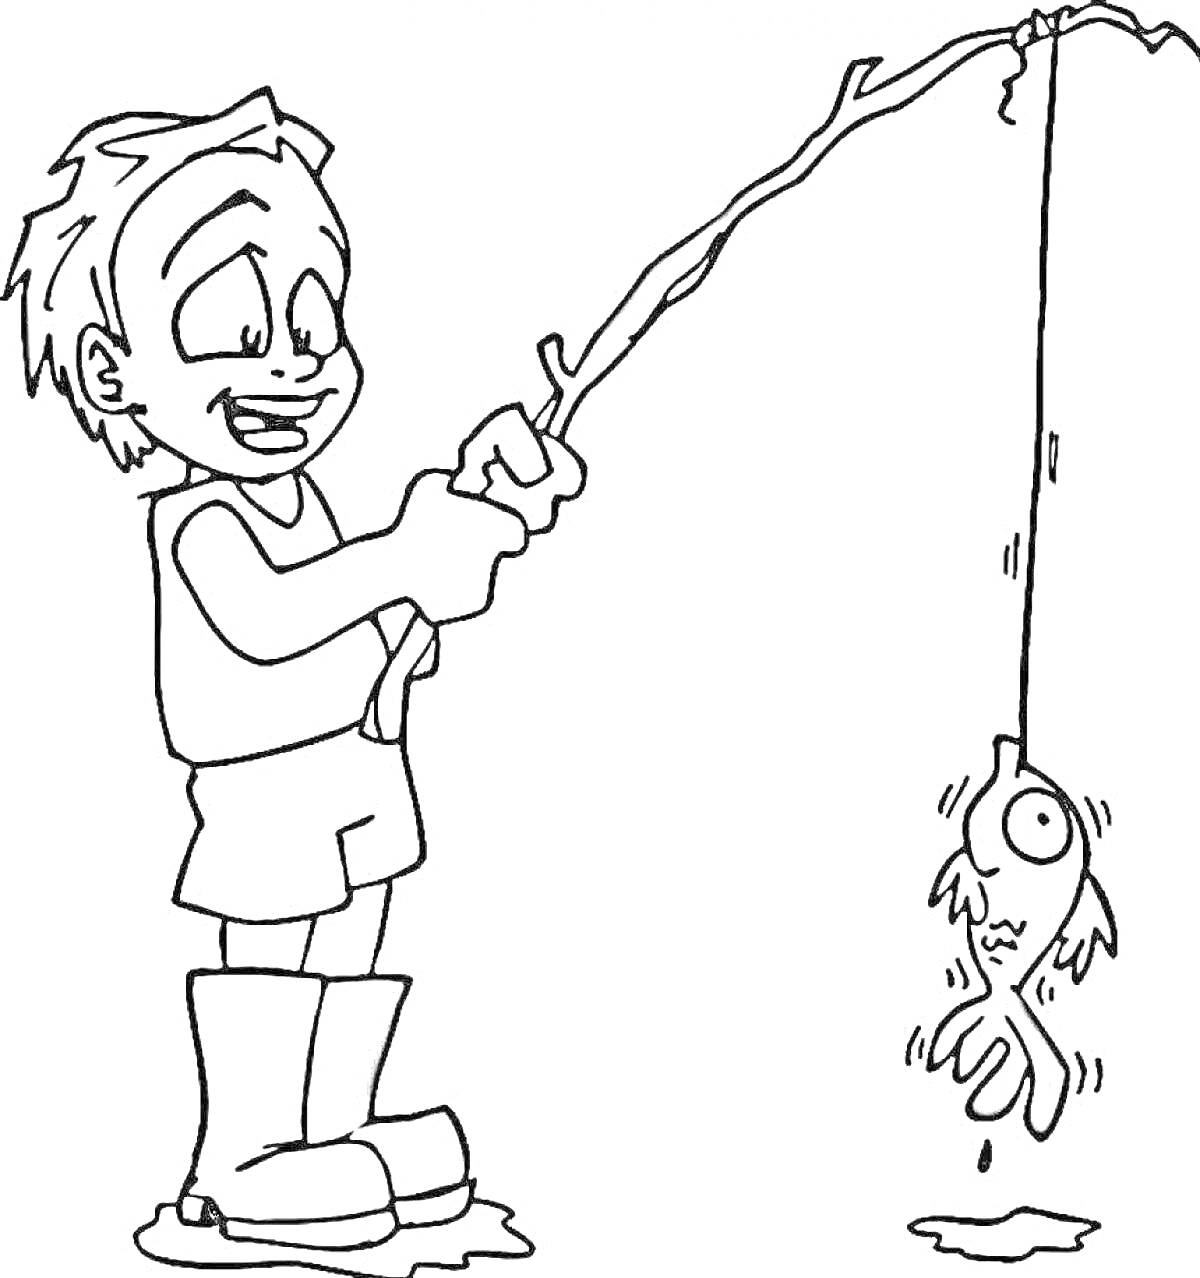 Раскраска Мальчик с удочкой и пойманной рыбой на крючке